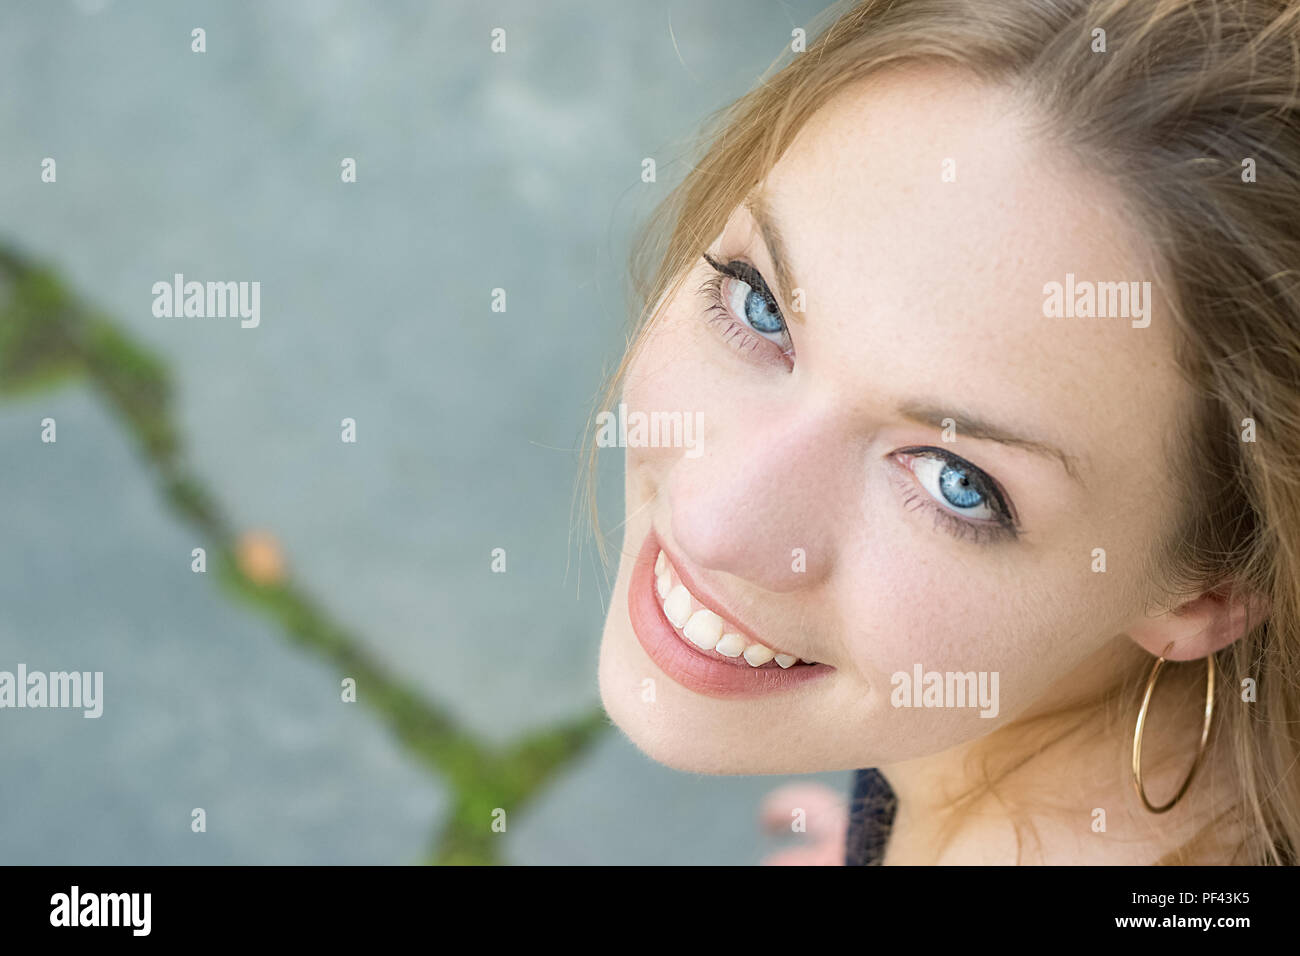 Porträt eines österreichischen junge Frau blond mit blauen Augen blickte, toothy Lächeln, gesunde Zähne. Stockfoto